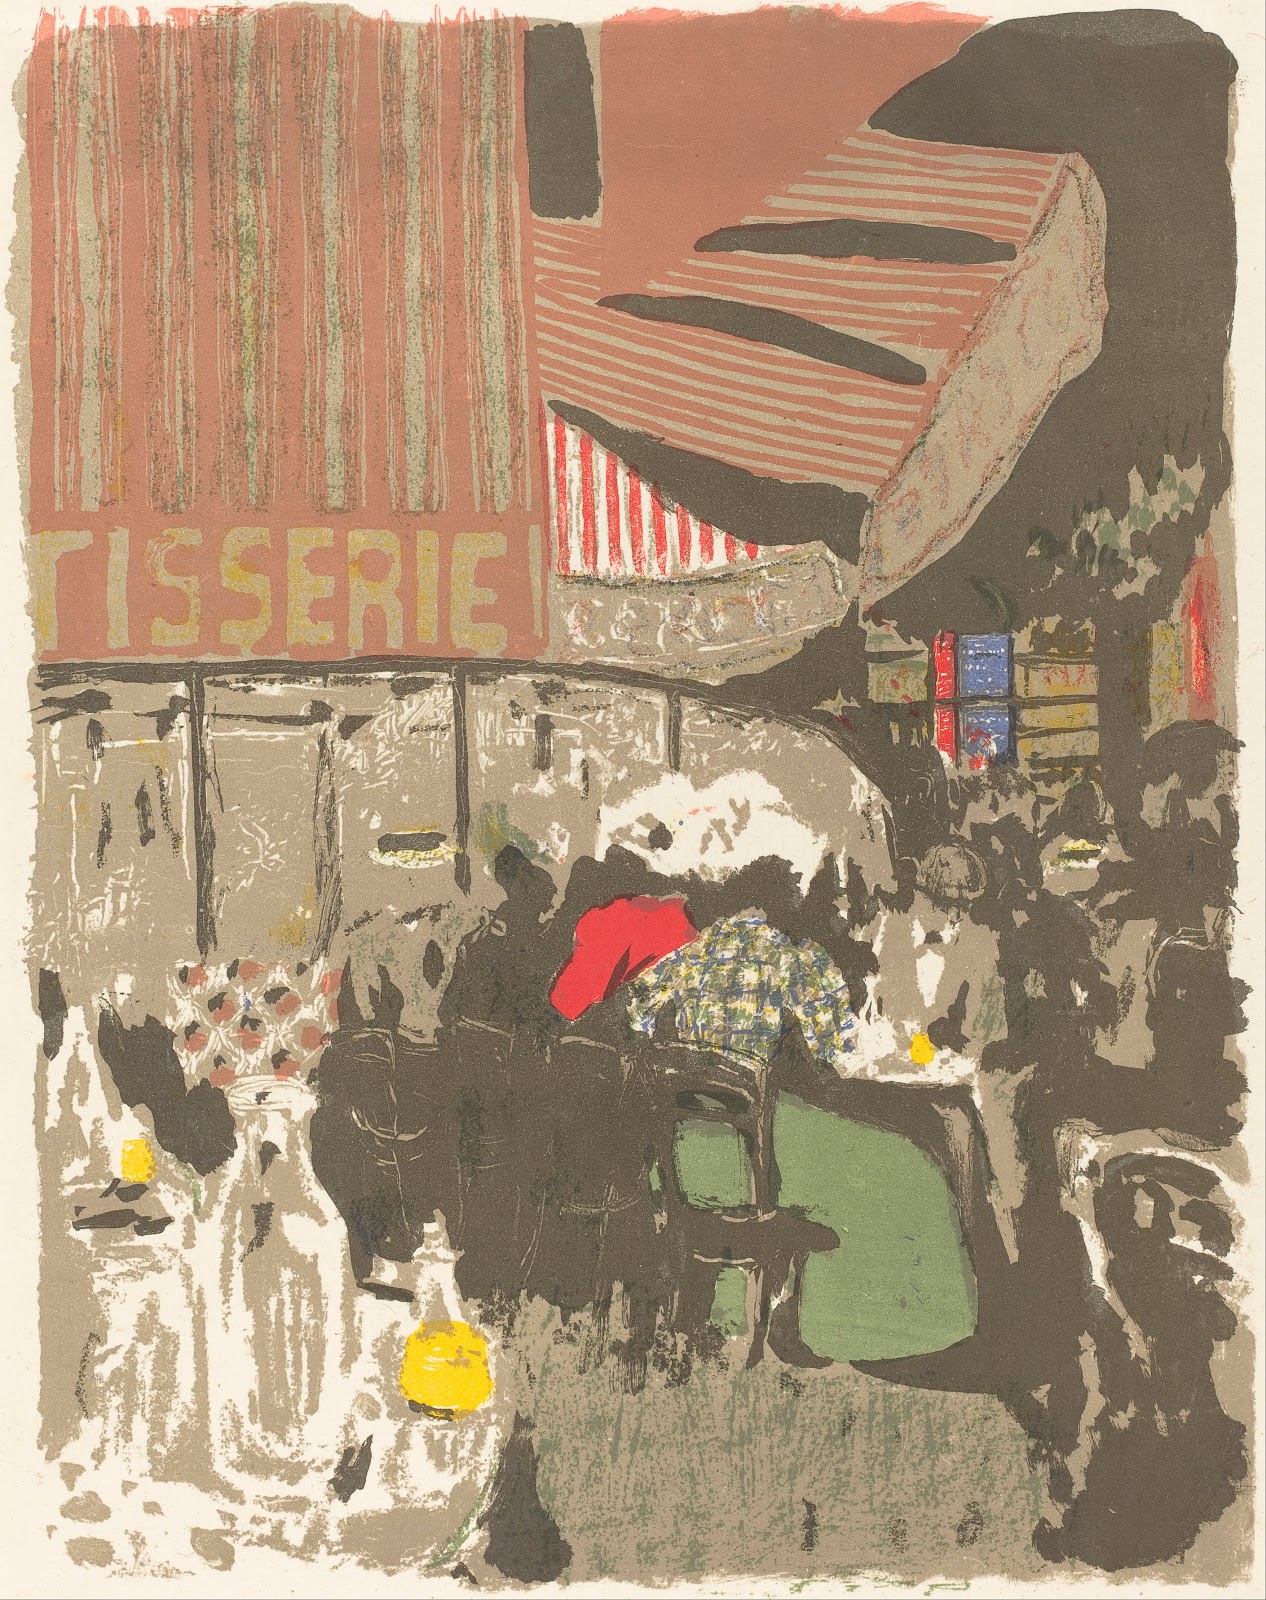 Edouard+Vuillard-1868-1940 (19).jpg